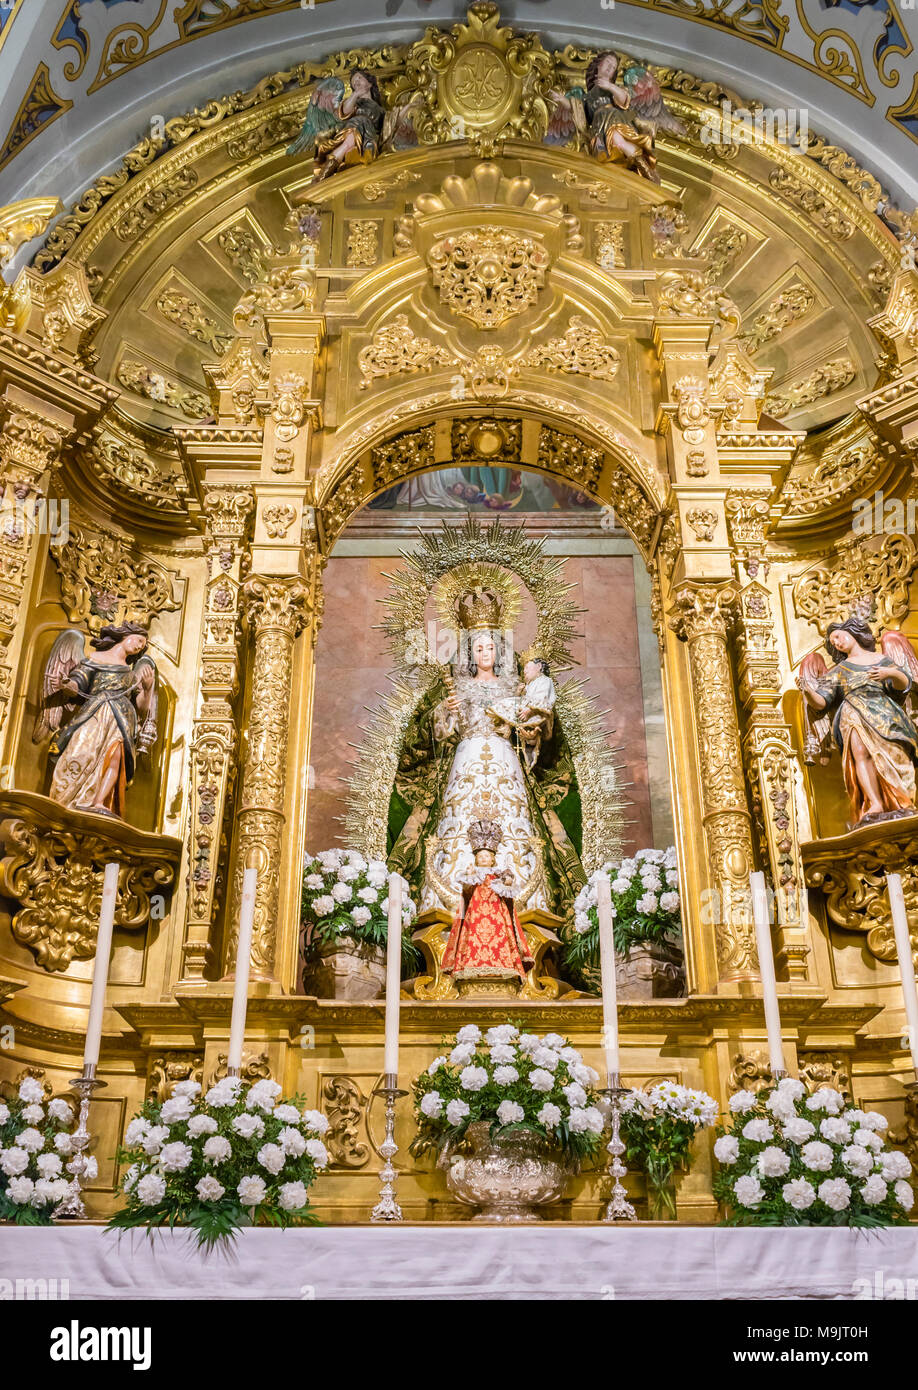 Die Kapelle der Madonna des Rosenkranzes" in der "Basilica de la Macarena" (Kirche der Macarena) in der spanischen Stadt Sevilla, Andalusien, Spanien Stockfoto